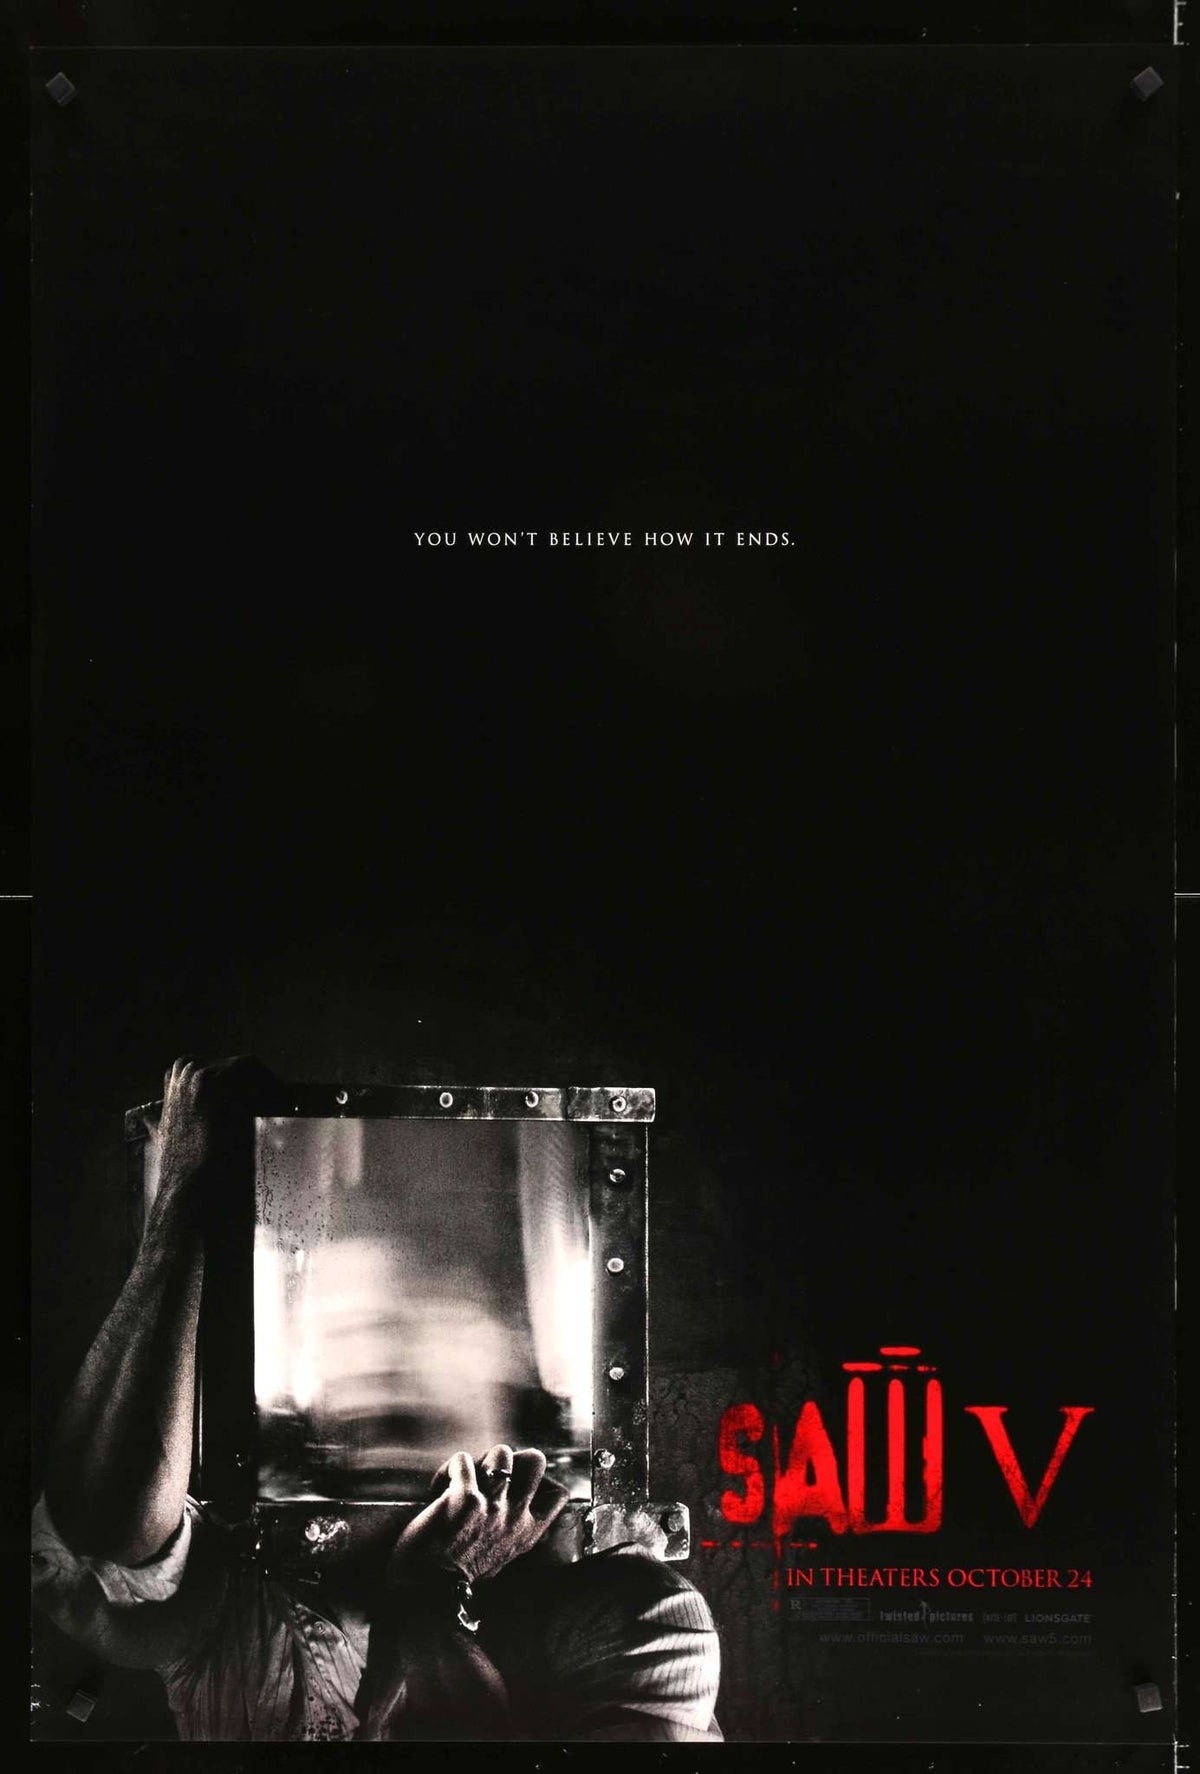 Saw V (2008) original movie poster for sale at Original Film Art